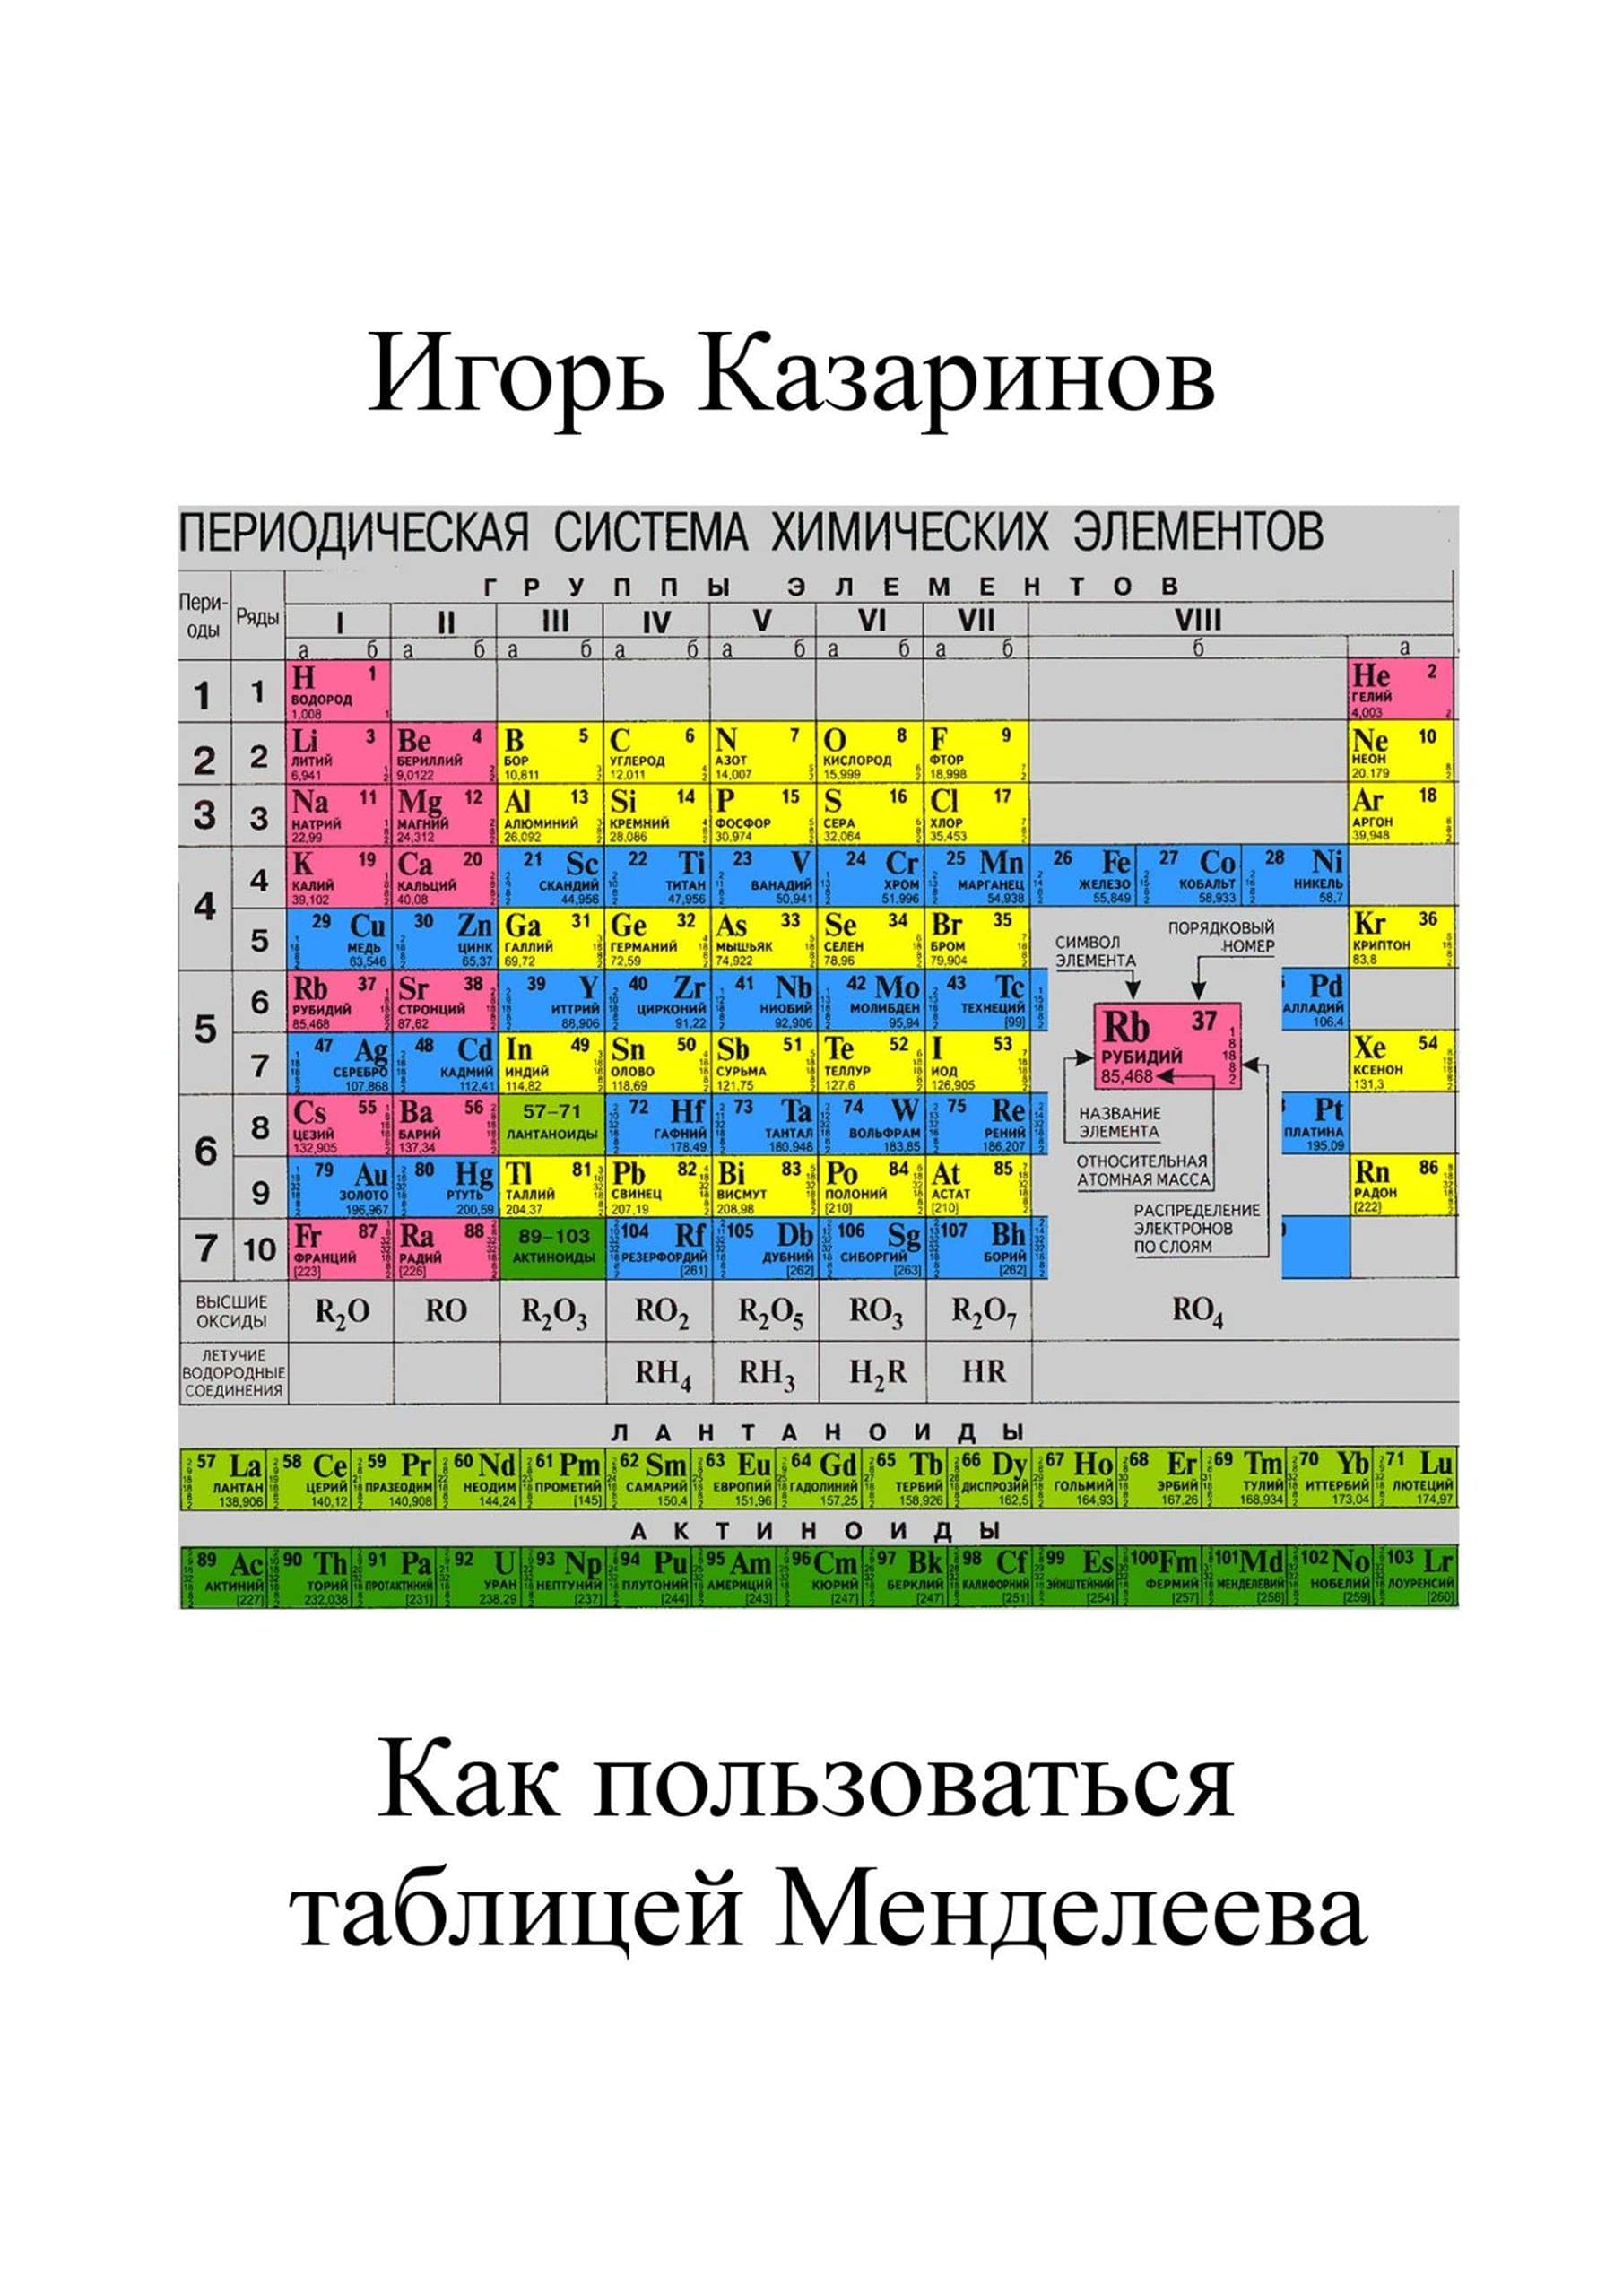 Как пользоваться таблицей Менделеева (Russian Edition)